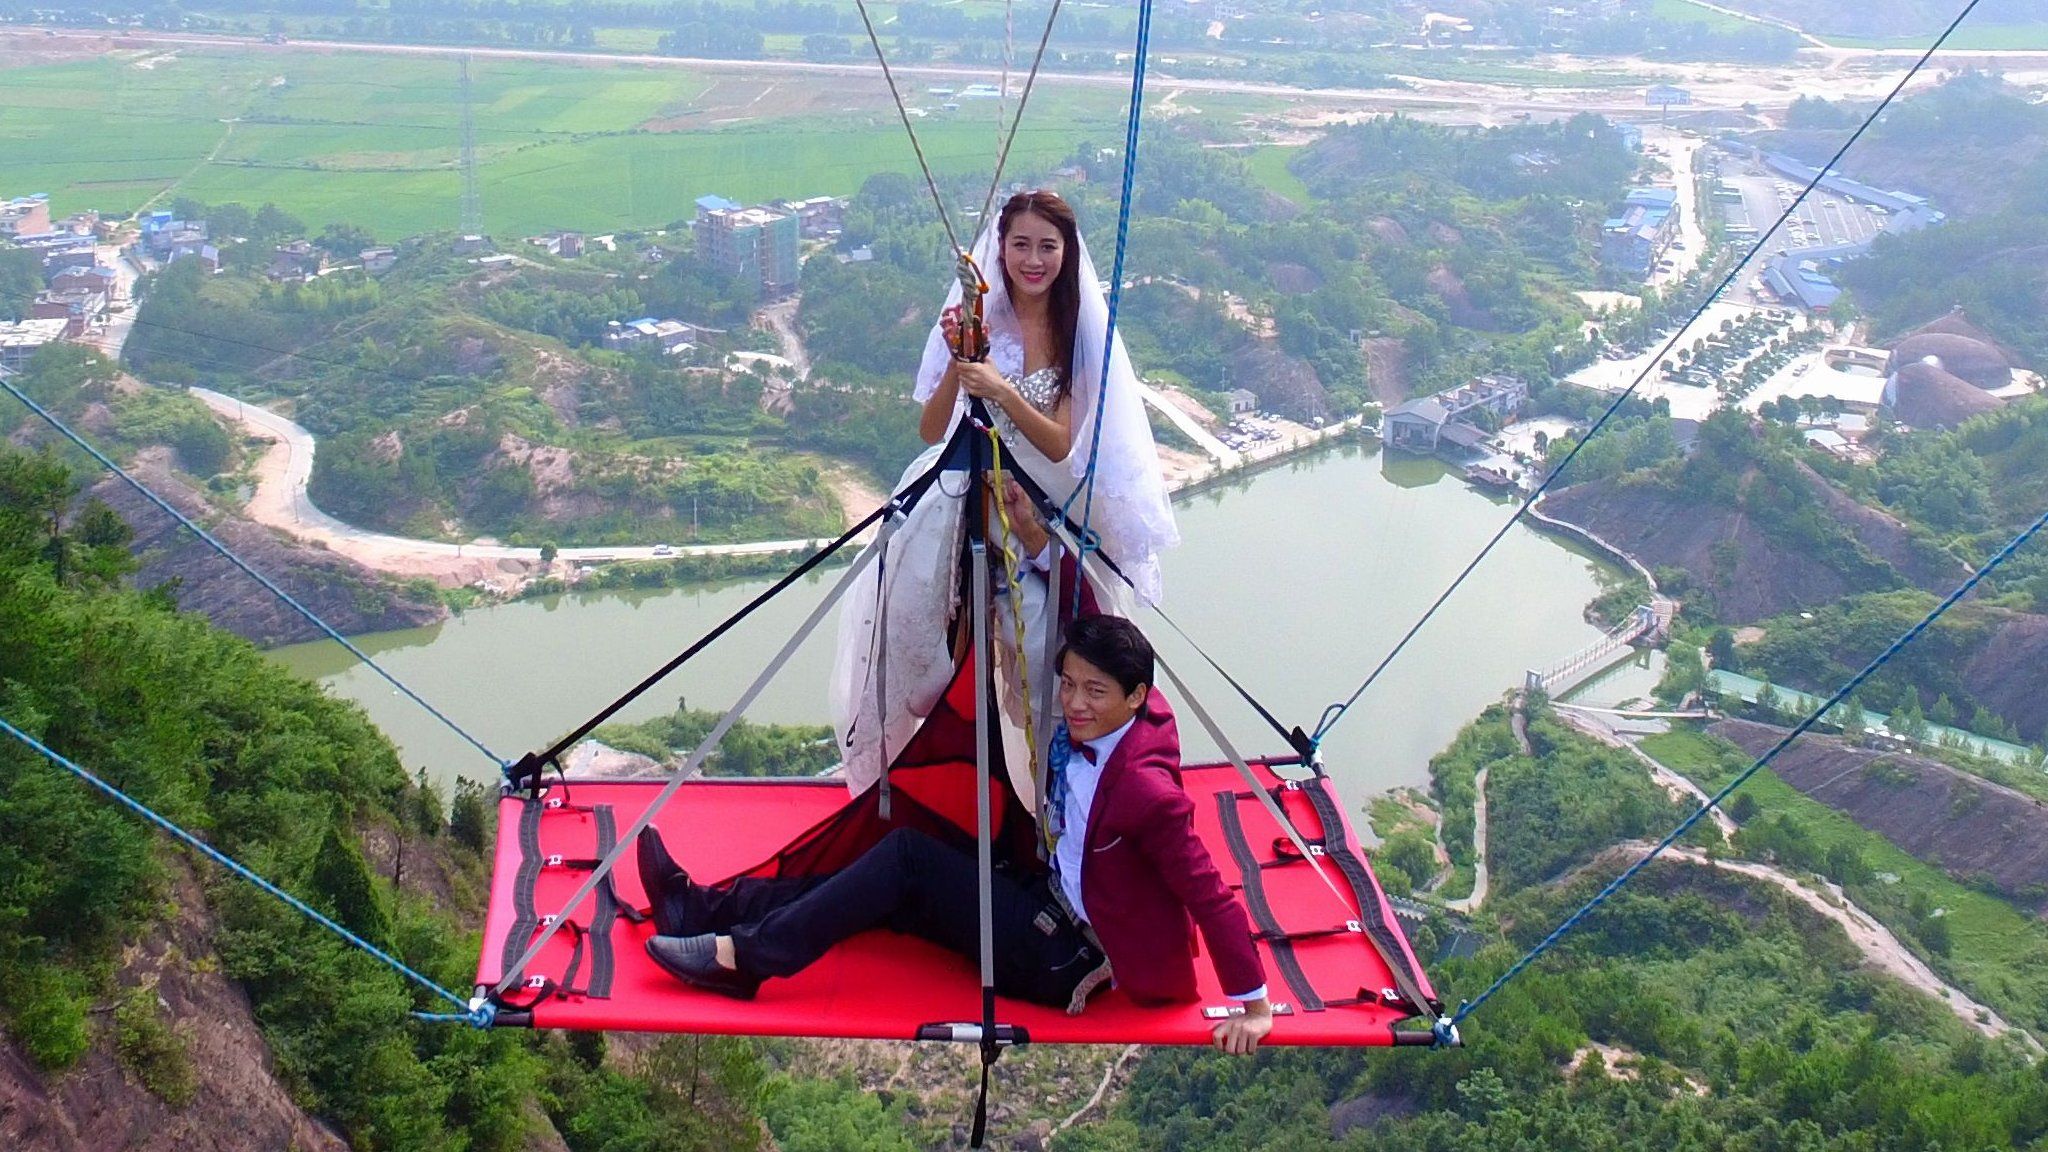 The couple suspended off Shiniuzhai glass bridge